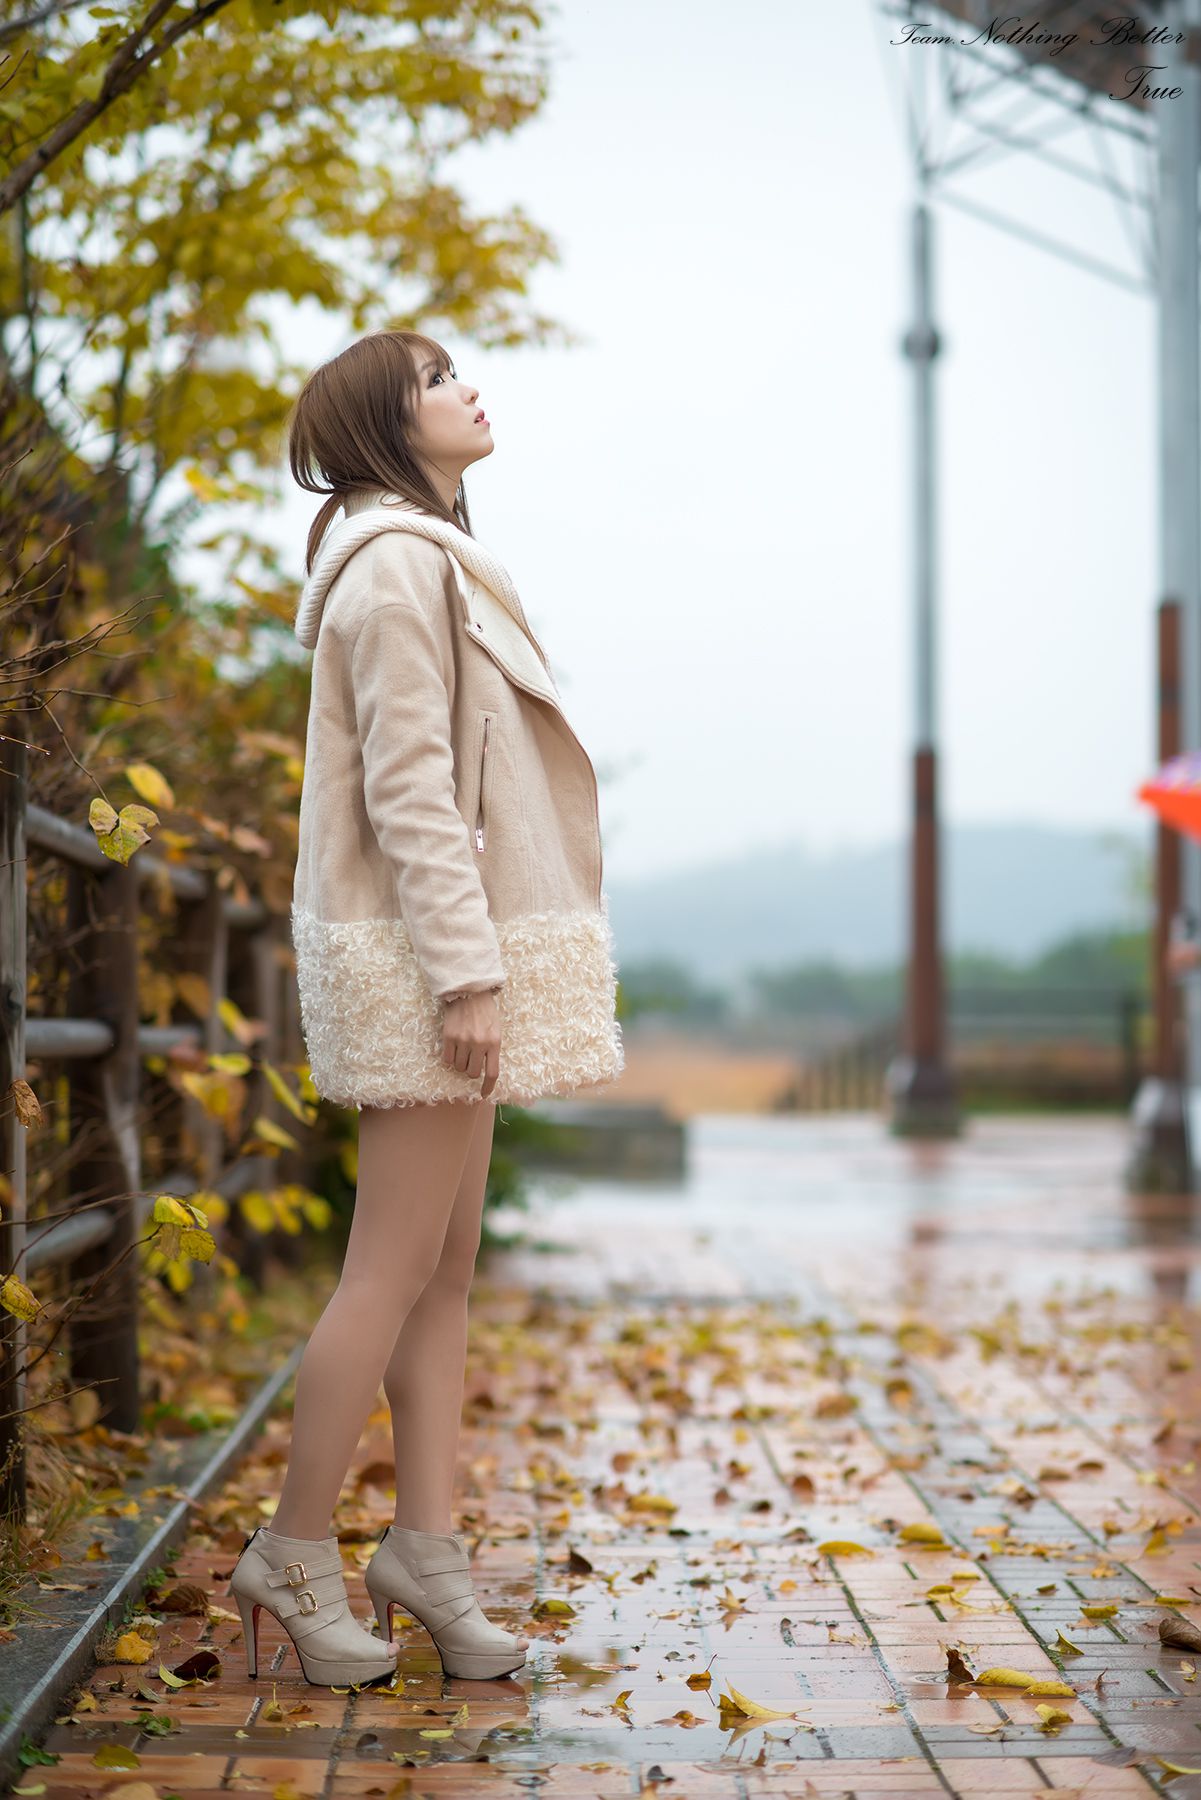 极品韩国美女李恩慧《下雨天街拍》  第7张